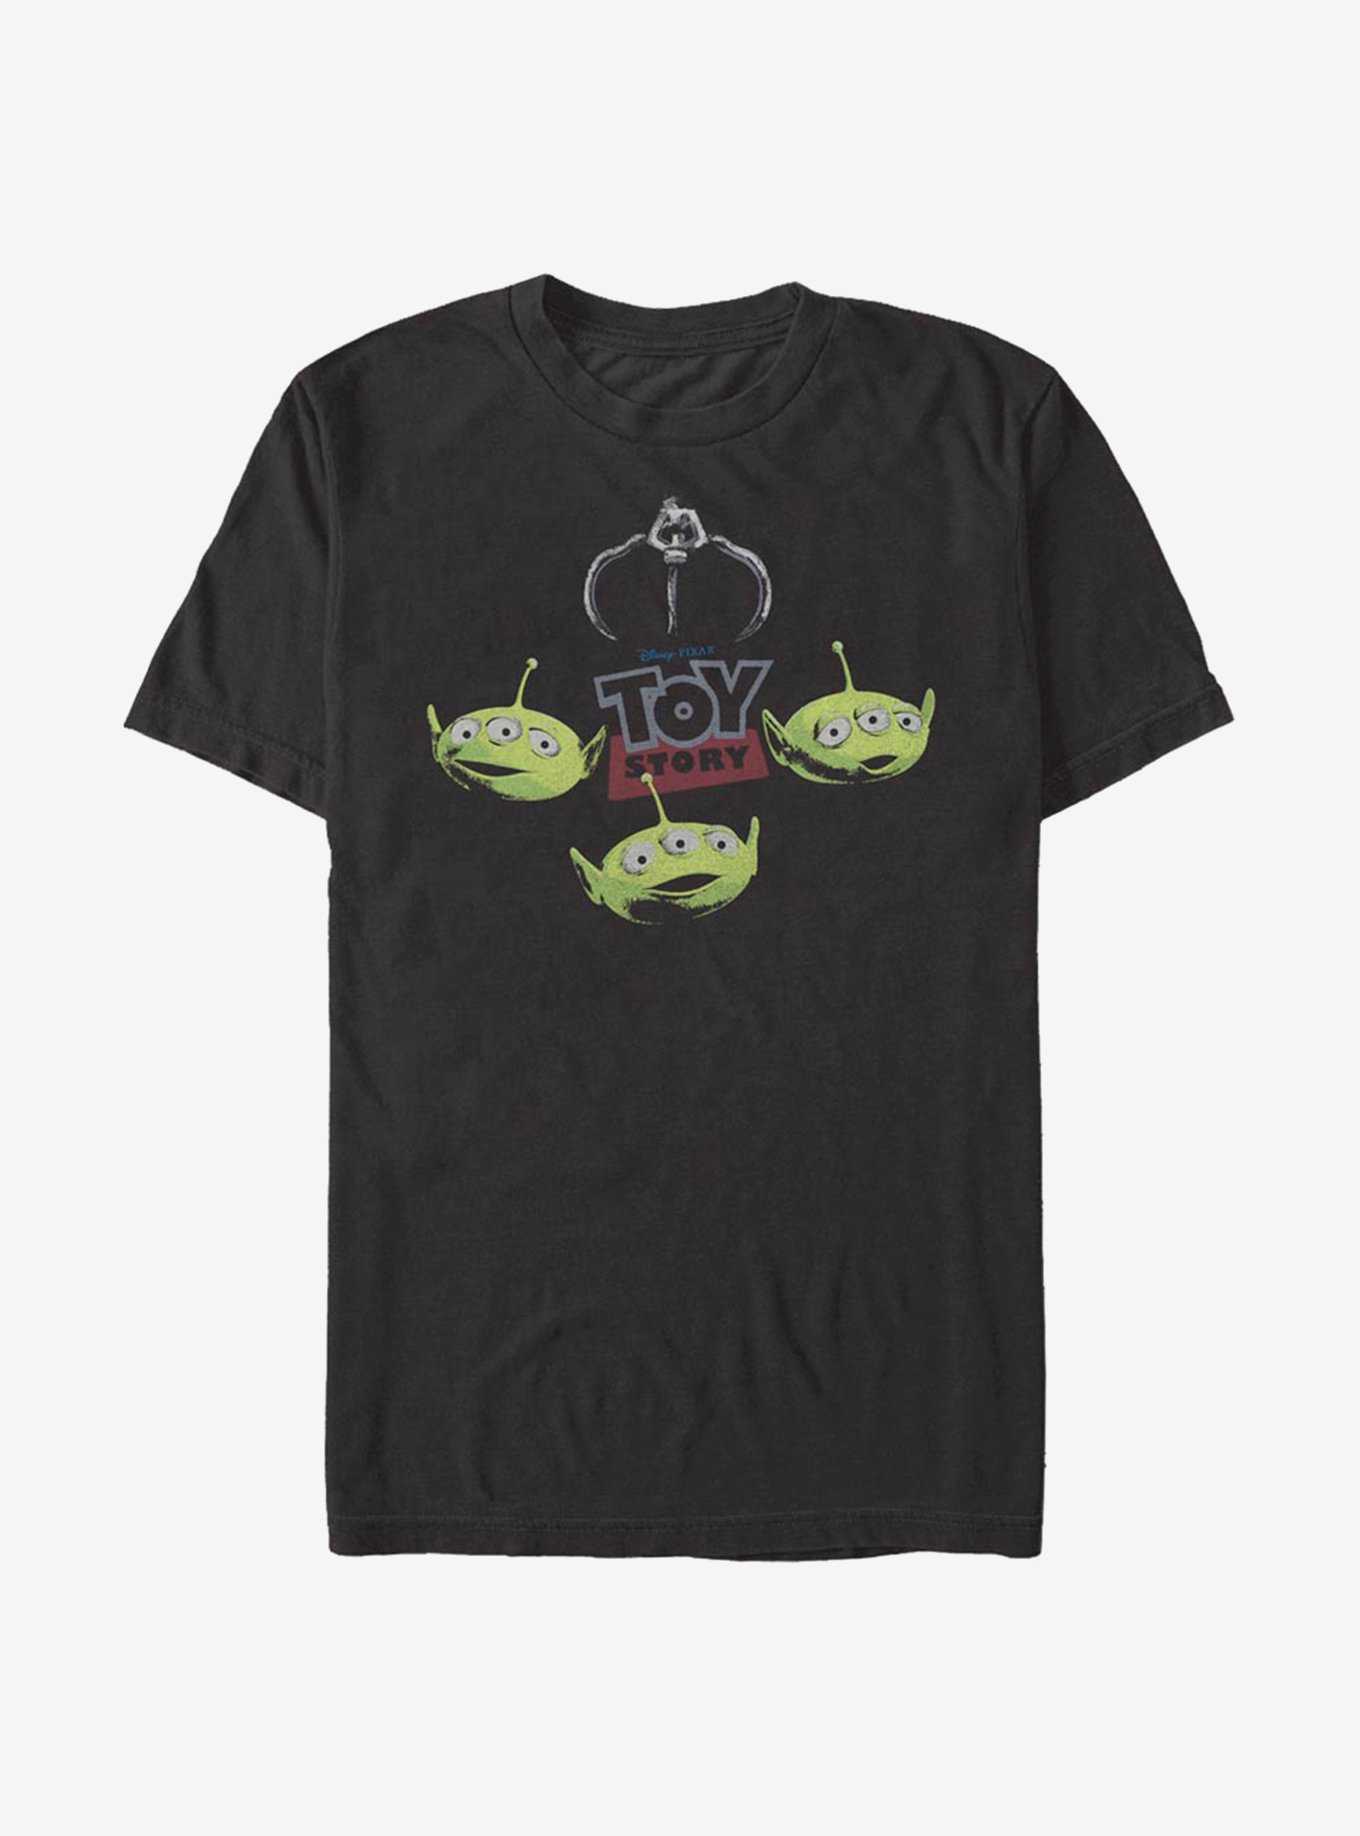 Disney Pixar Toy Story Oooooh T-Shirt, , hi-res